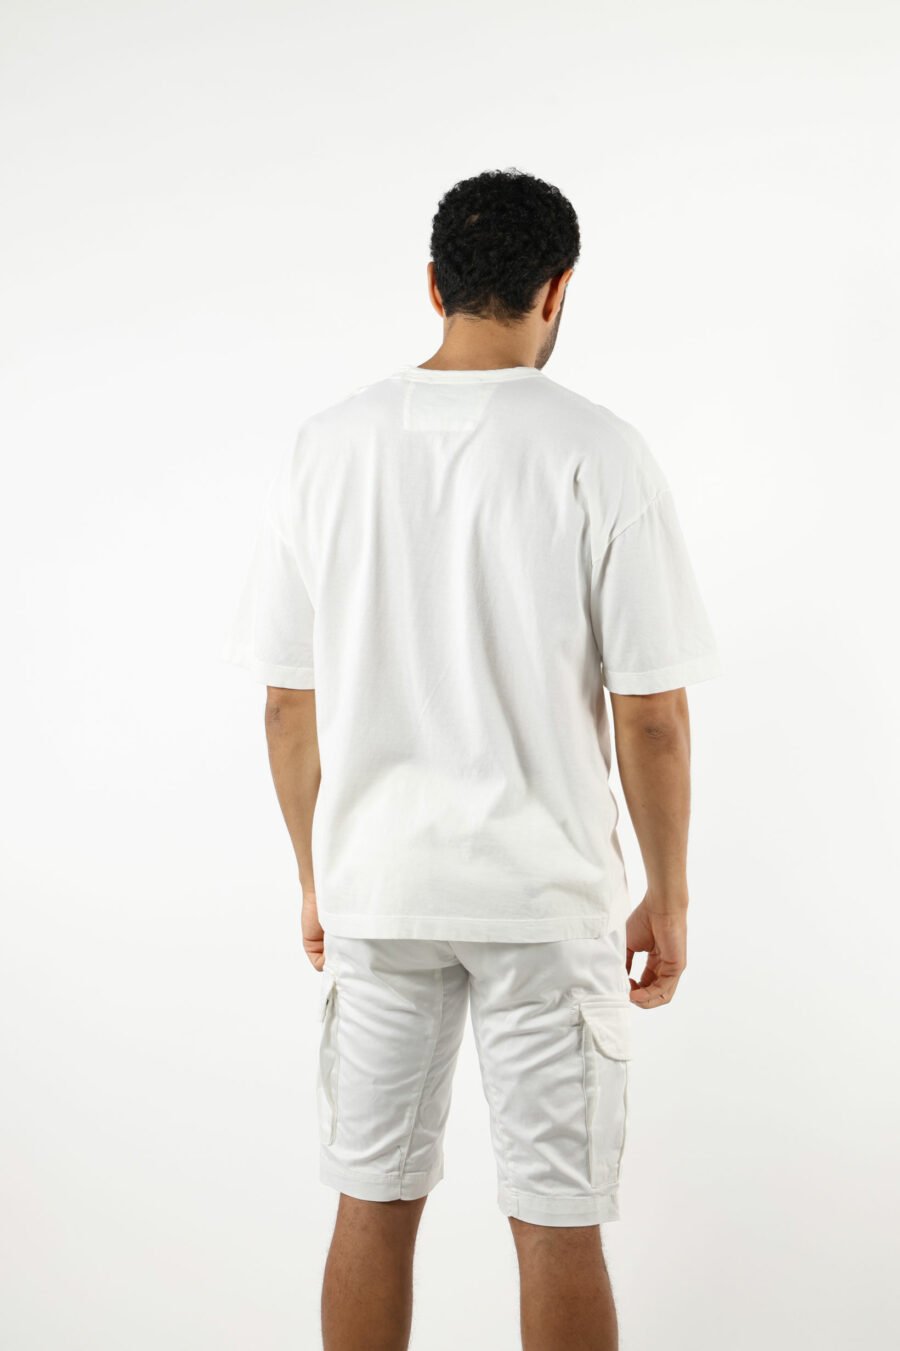 Camiseta blanca "oversize" con minilogo "cp 989" - 111320